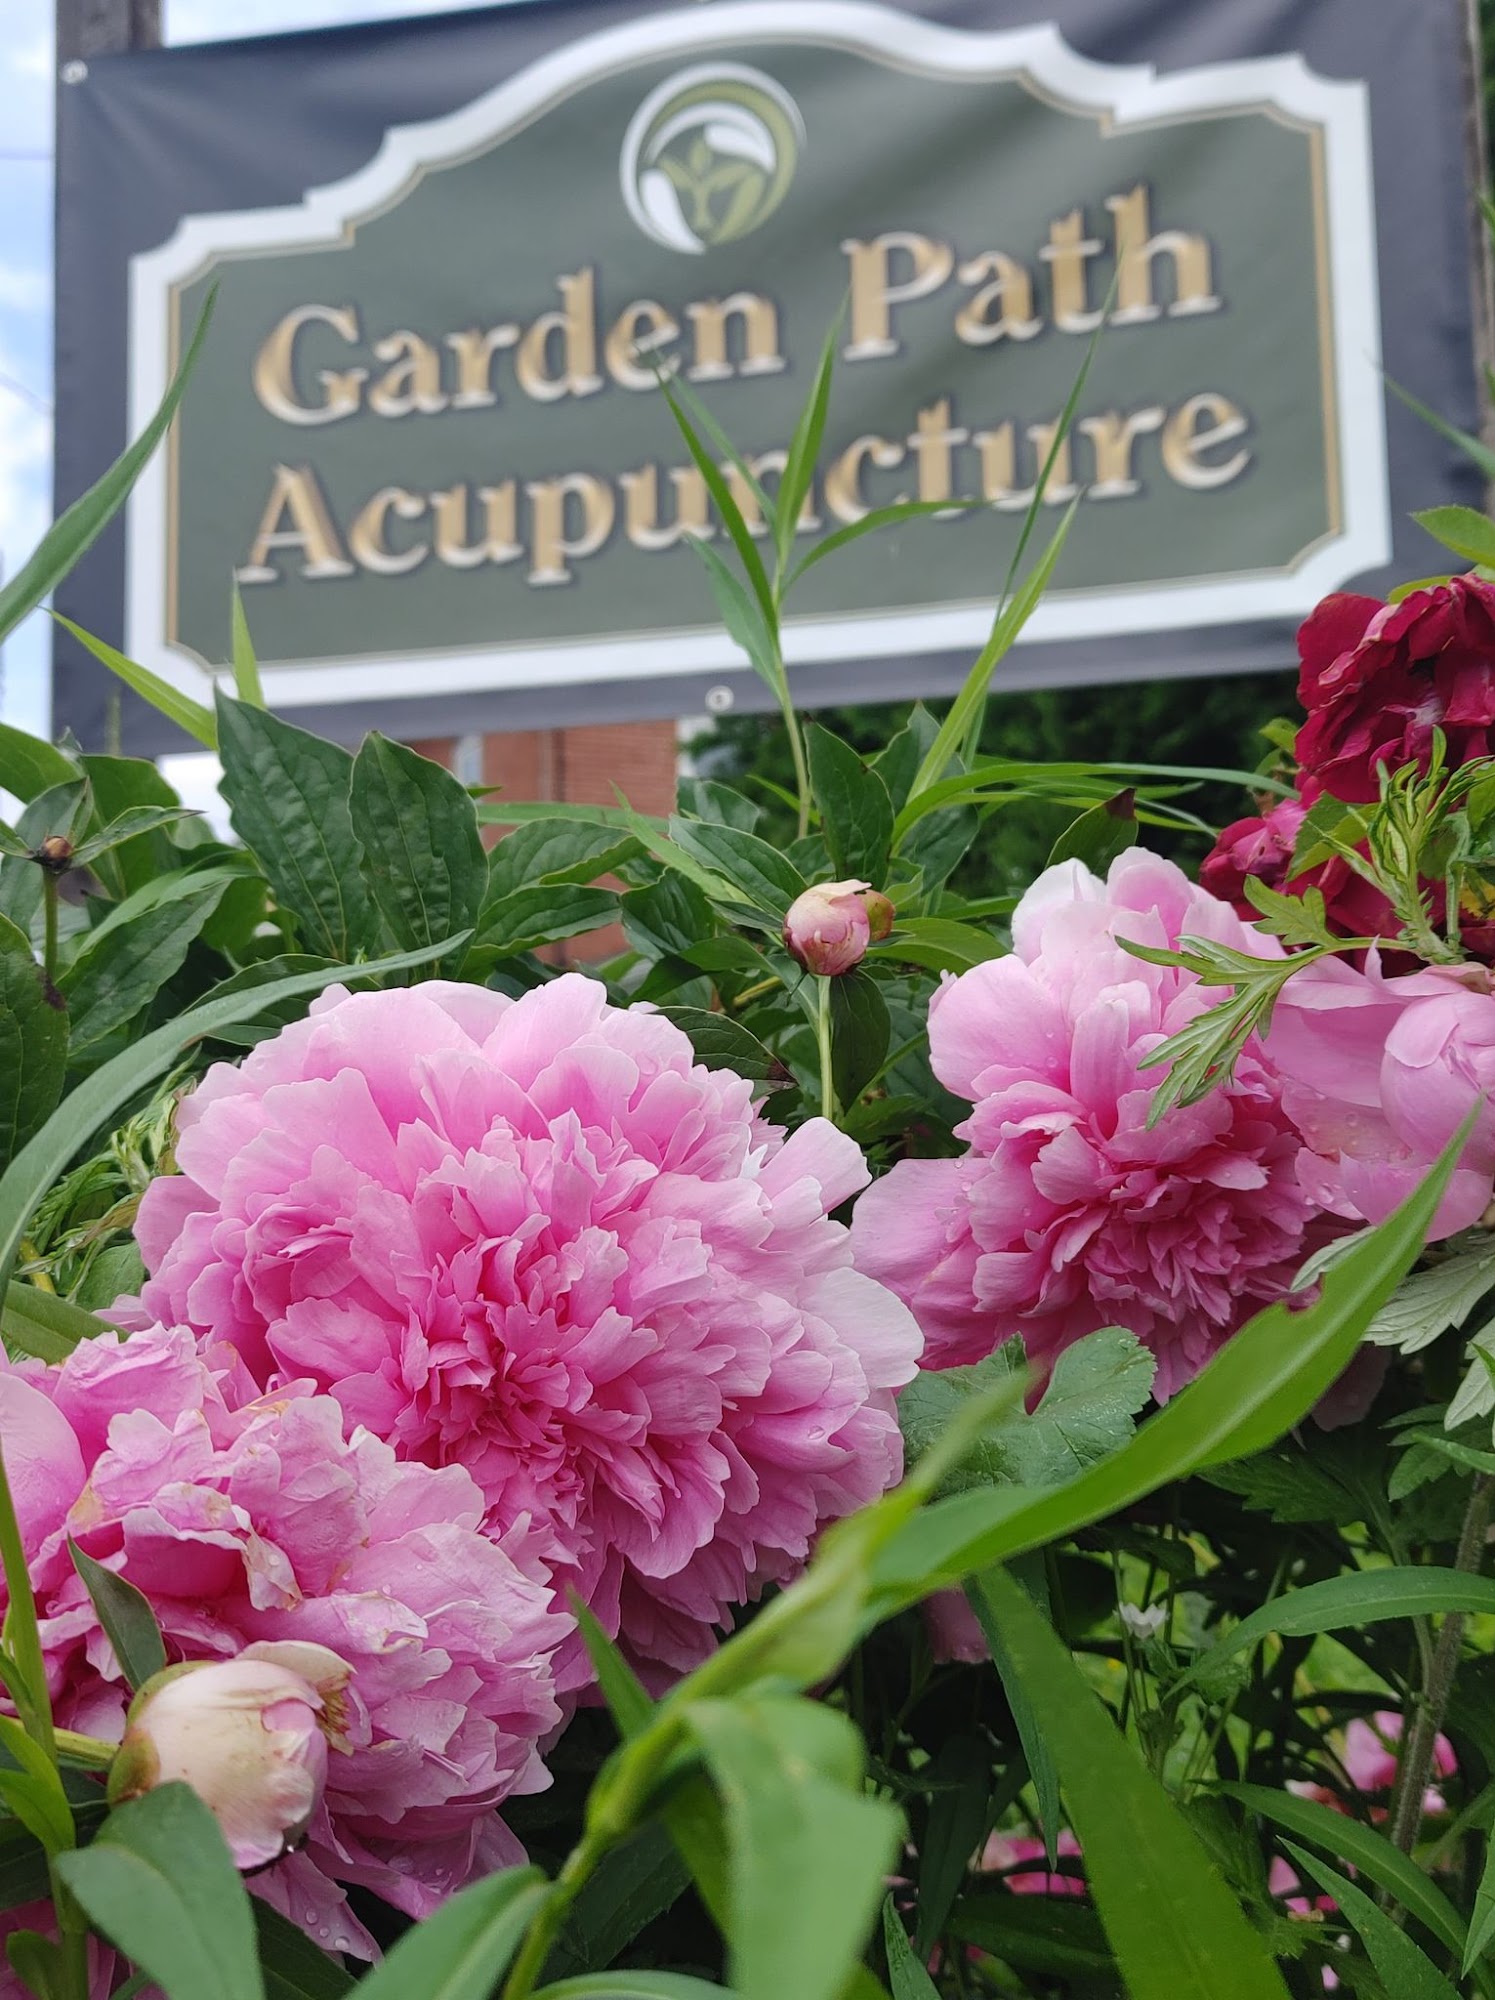 Garden Path Acupuncture